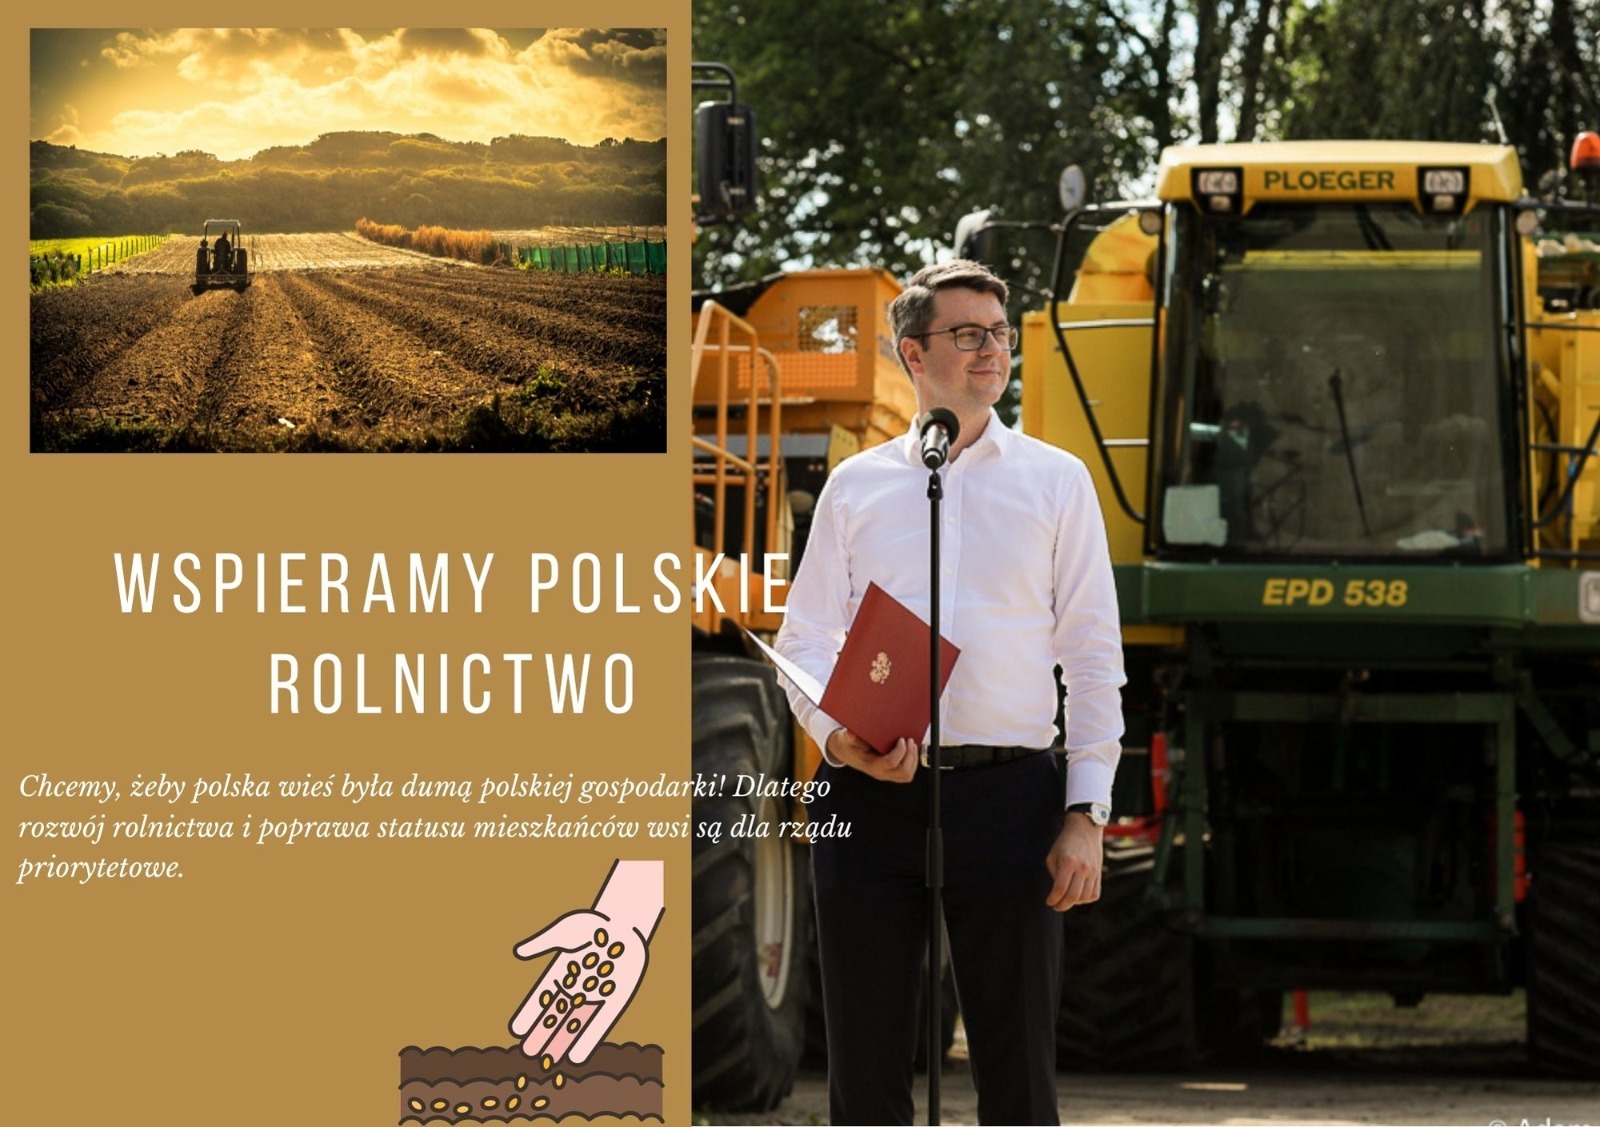 Poseł Piotr Müller podkreśla, że polska wieś jest dumą polskiej gospodarki, dlatego rozwój rolnictwa i poprawa statusu mieszkańców wsi są dla rządu Prawa i Sprawiedliwości priorytetowe. Oto, jak rząd wspiera polskie rolnictwo.